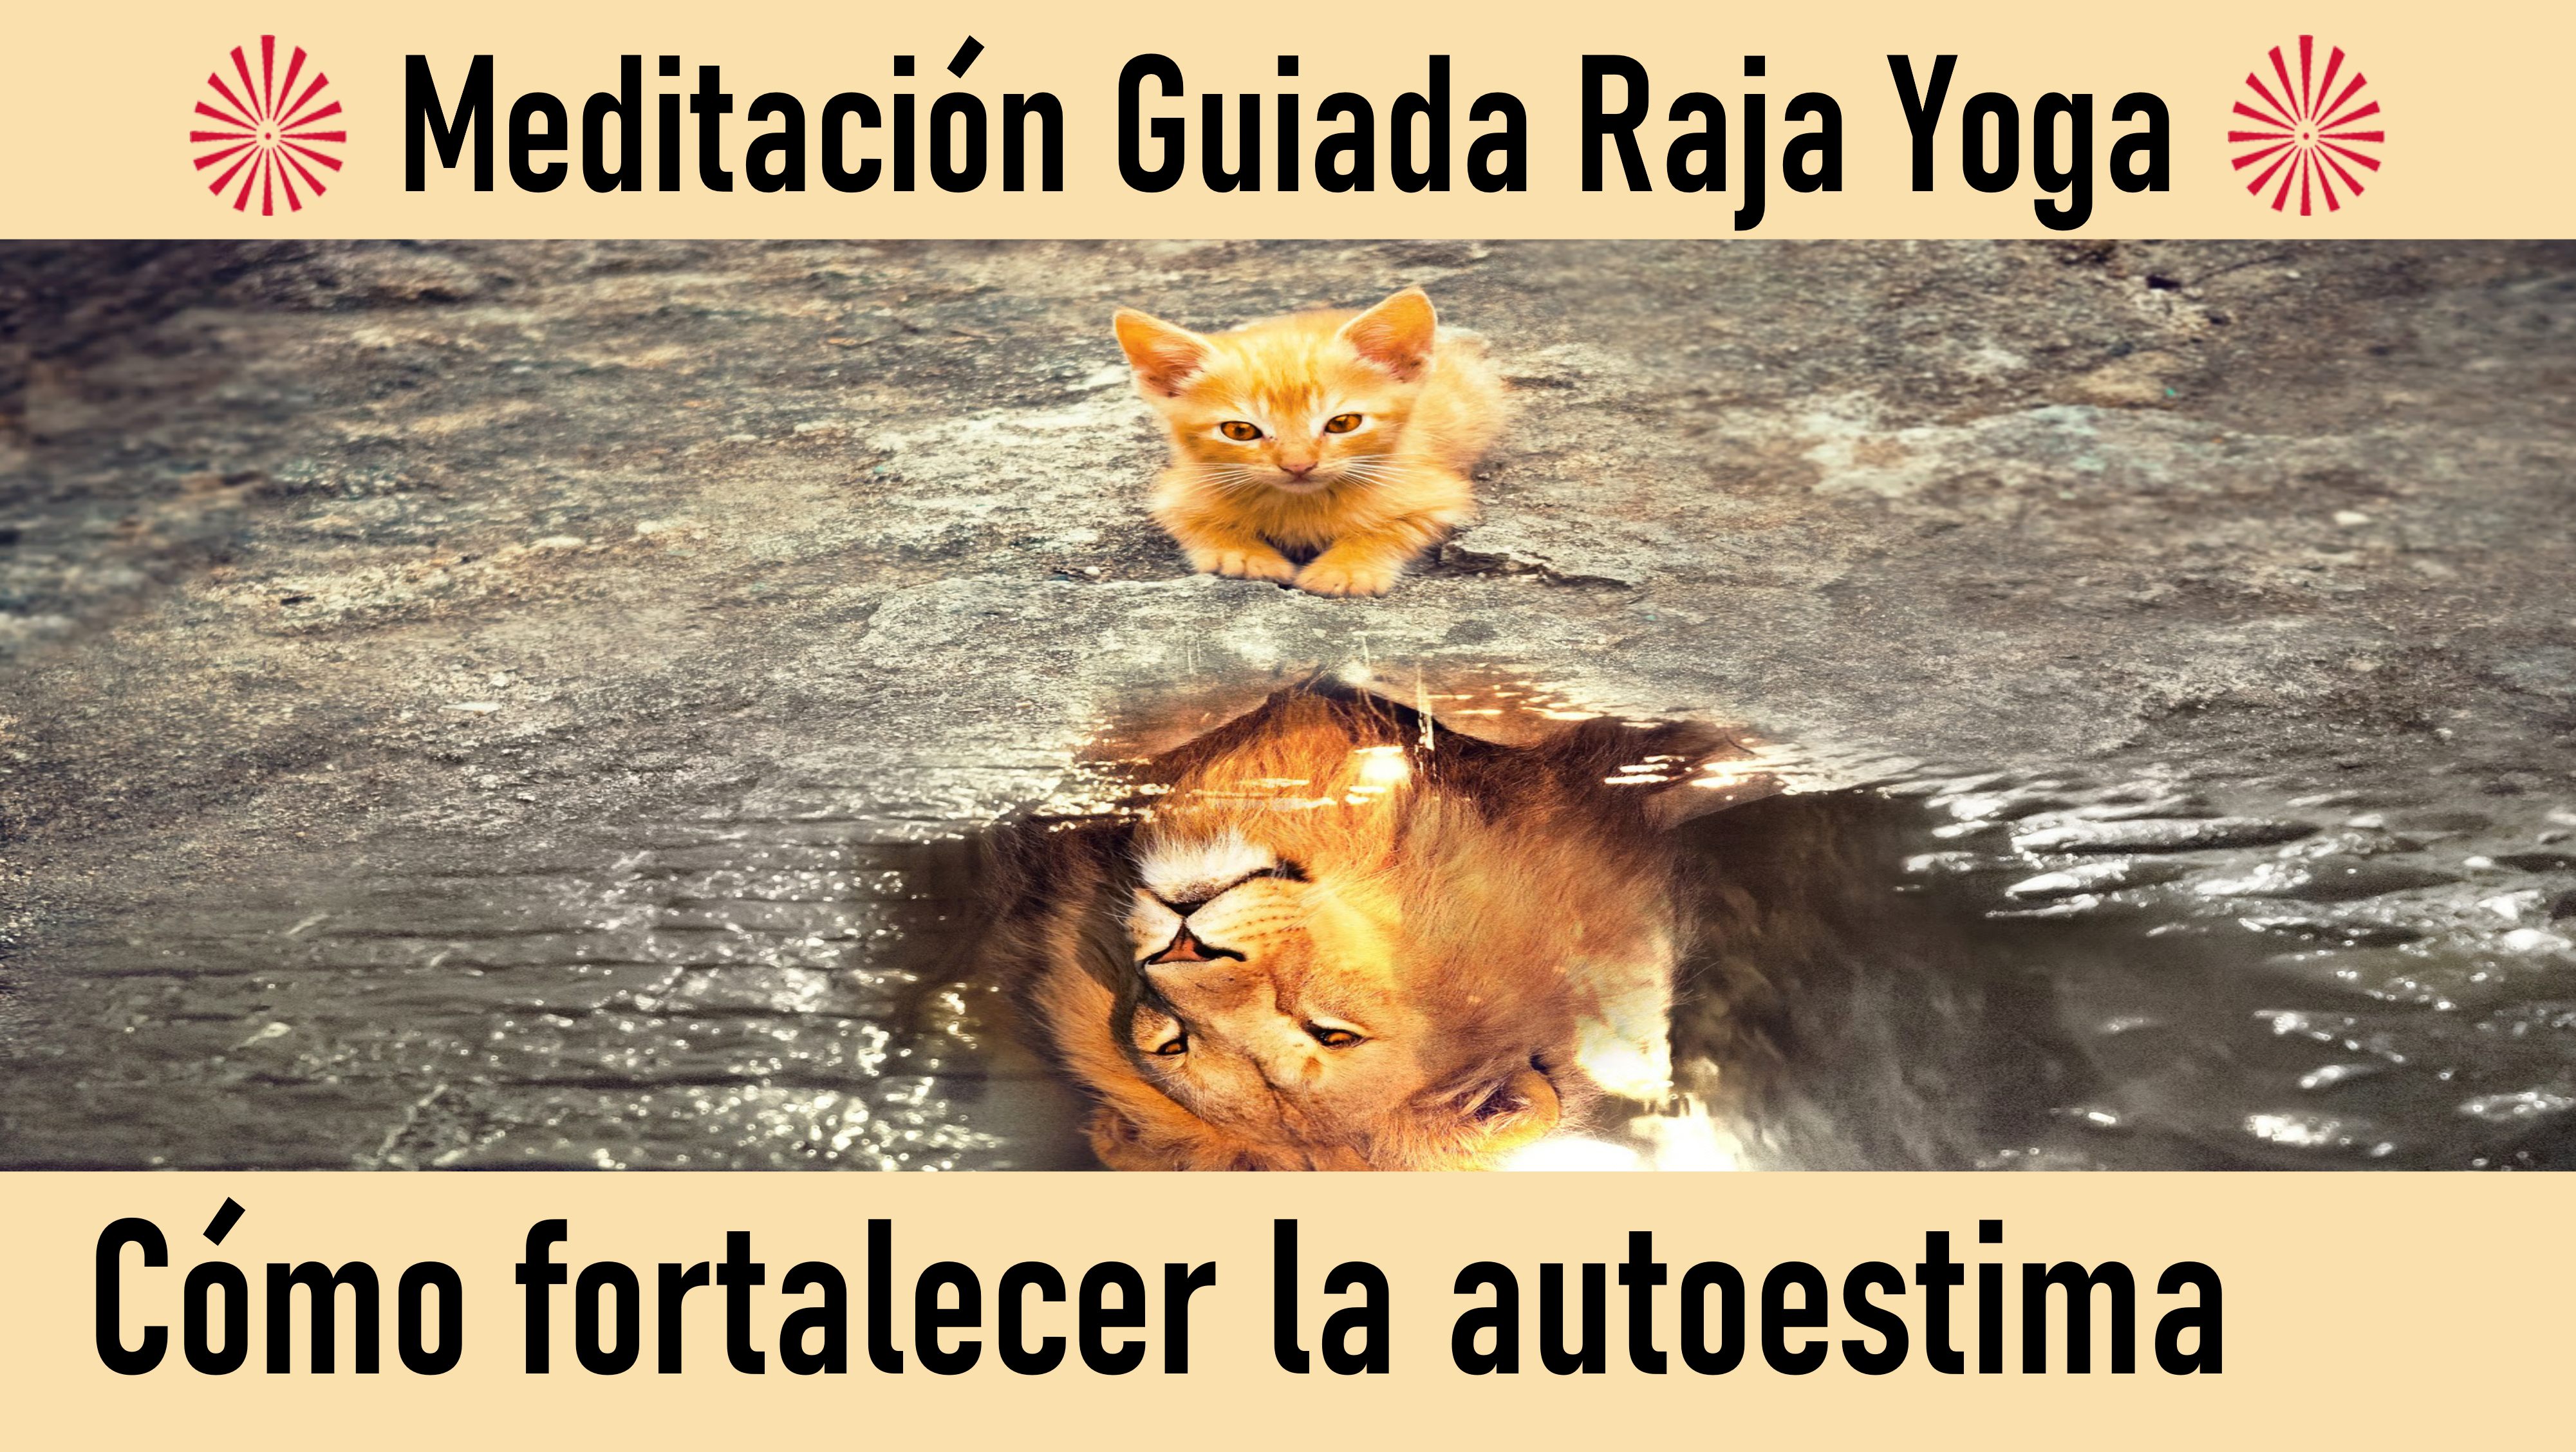 Meditación Raja Yoga: Cómo fortalecer la autoestima (12 Julio 2020) On-line desde Valencia